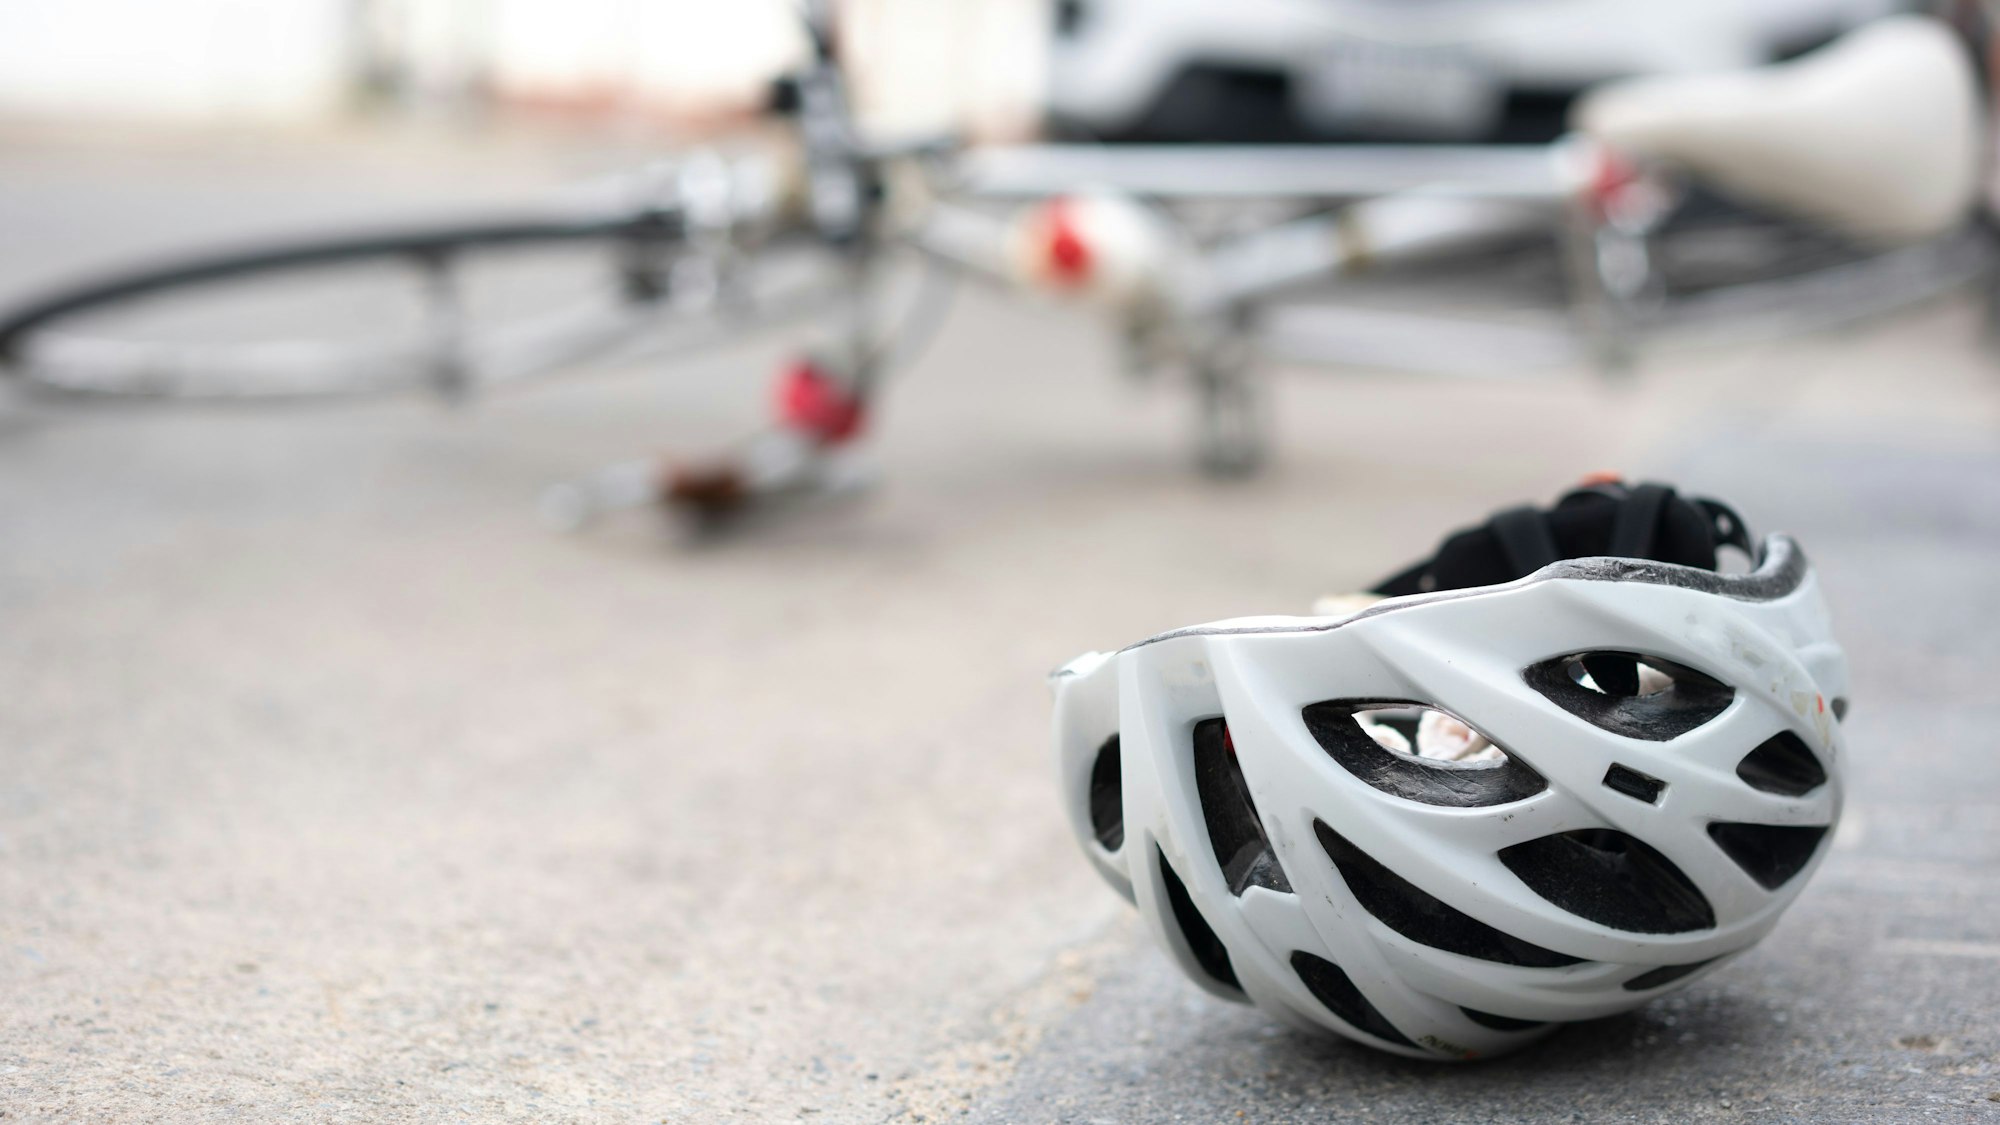 Ein Helm und ein umgefallenes Fahrrad liegen vor einem Auto auf der Straße